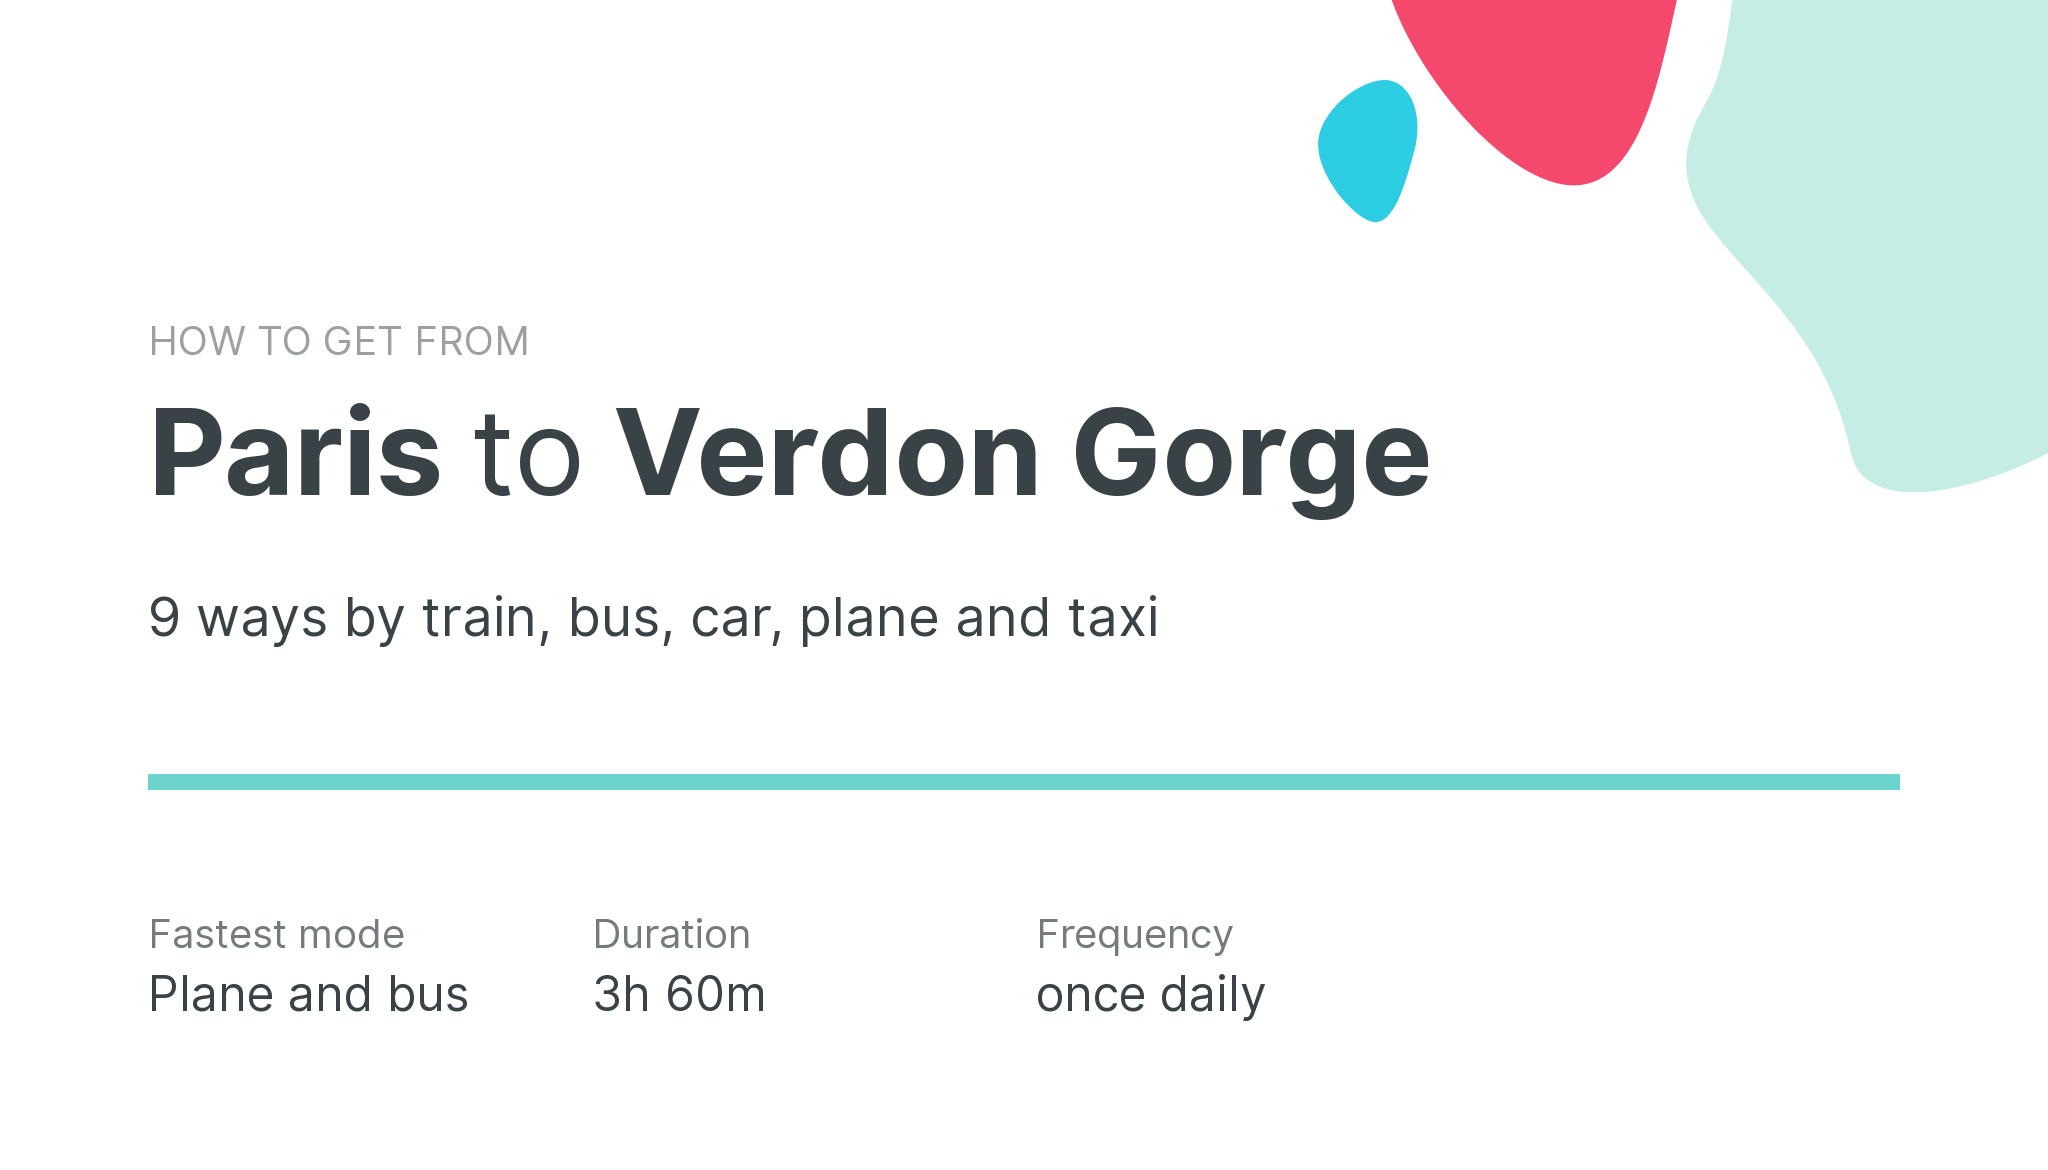 How do I get from Paris to Verdon Gorge